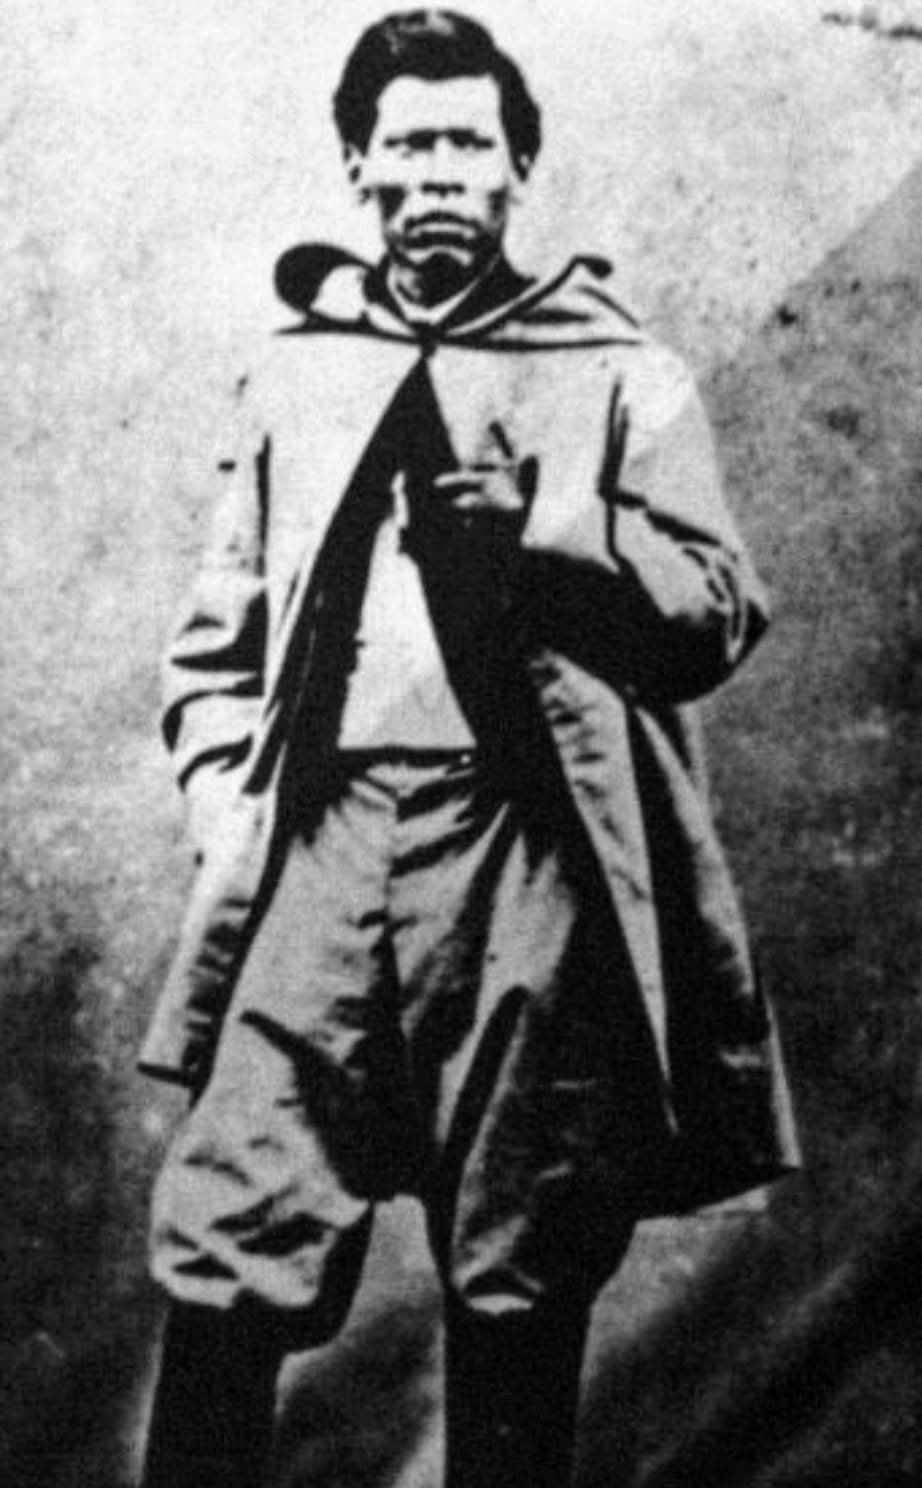 Foto en blanco y negro de un hombre con un traje de color negro

Descripción generada automáticamente con confianza media